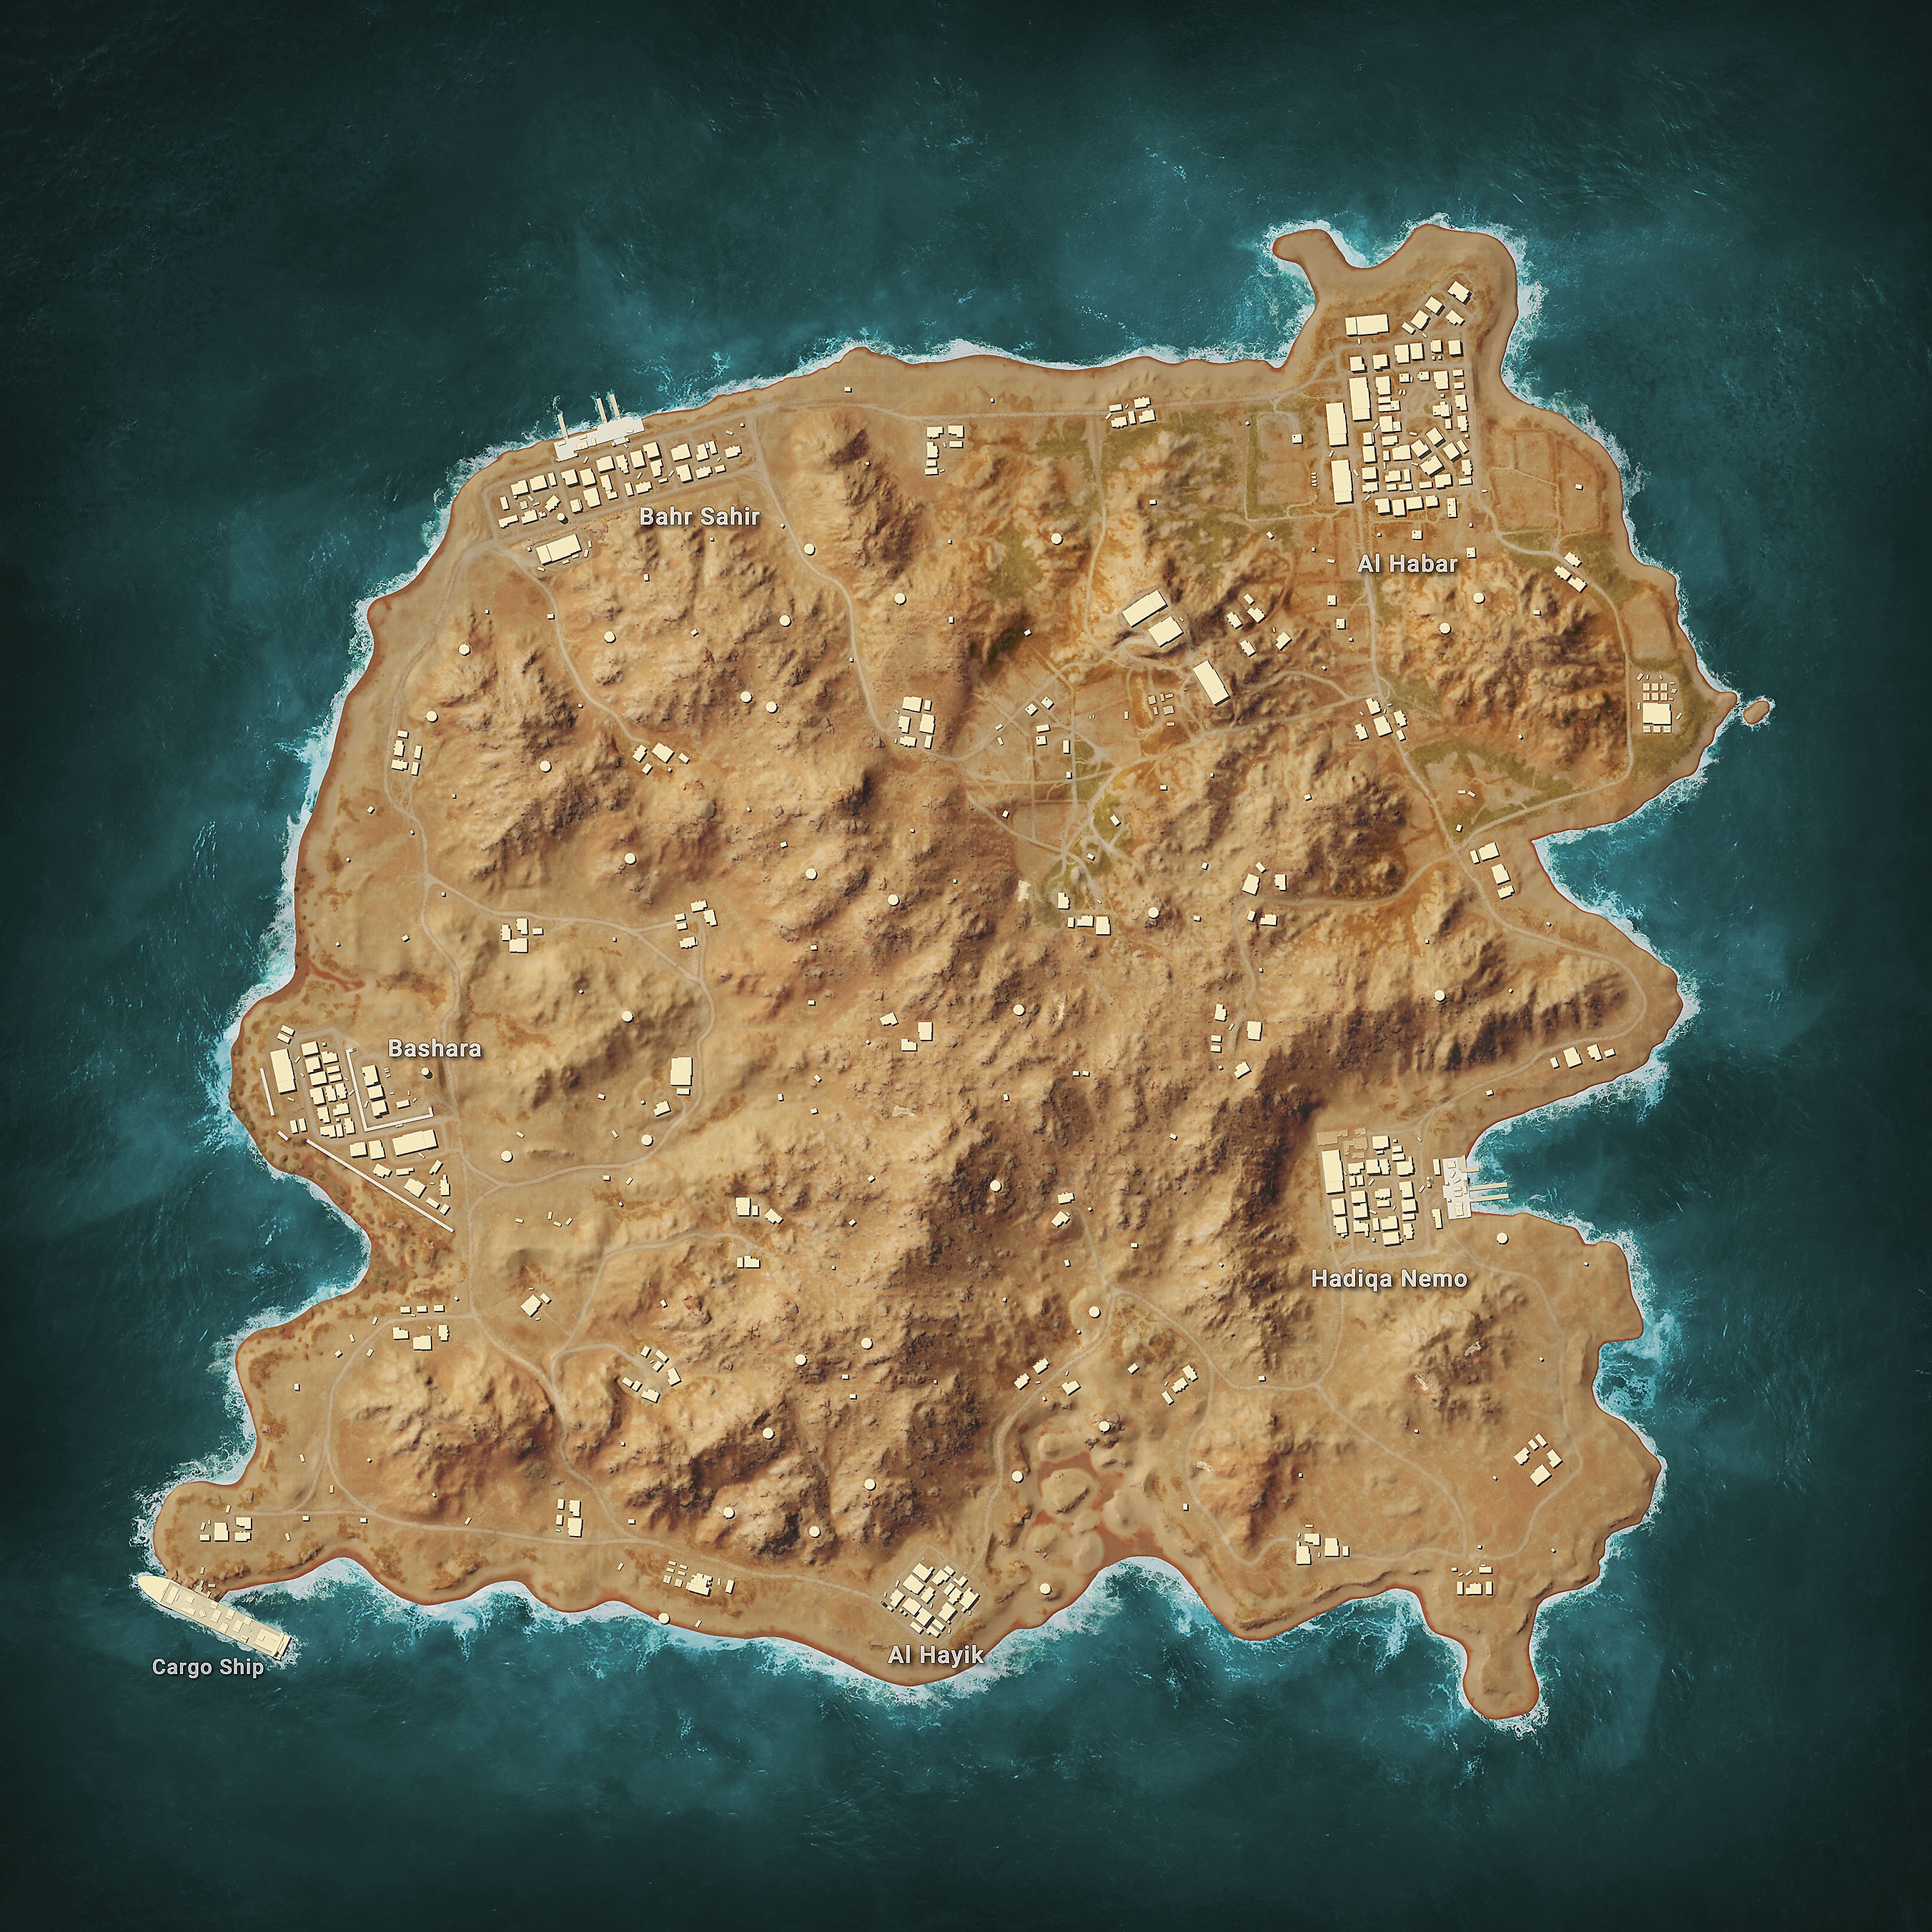 PUBG: Battlegrounds map - Karakin